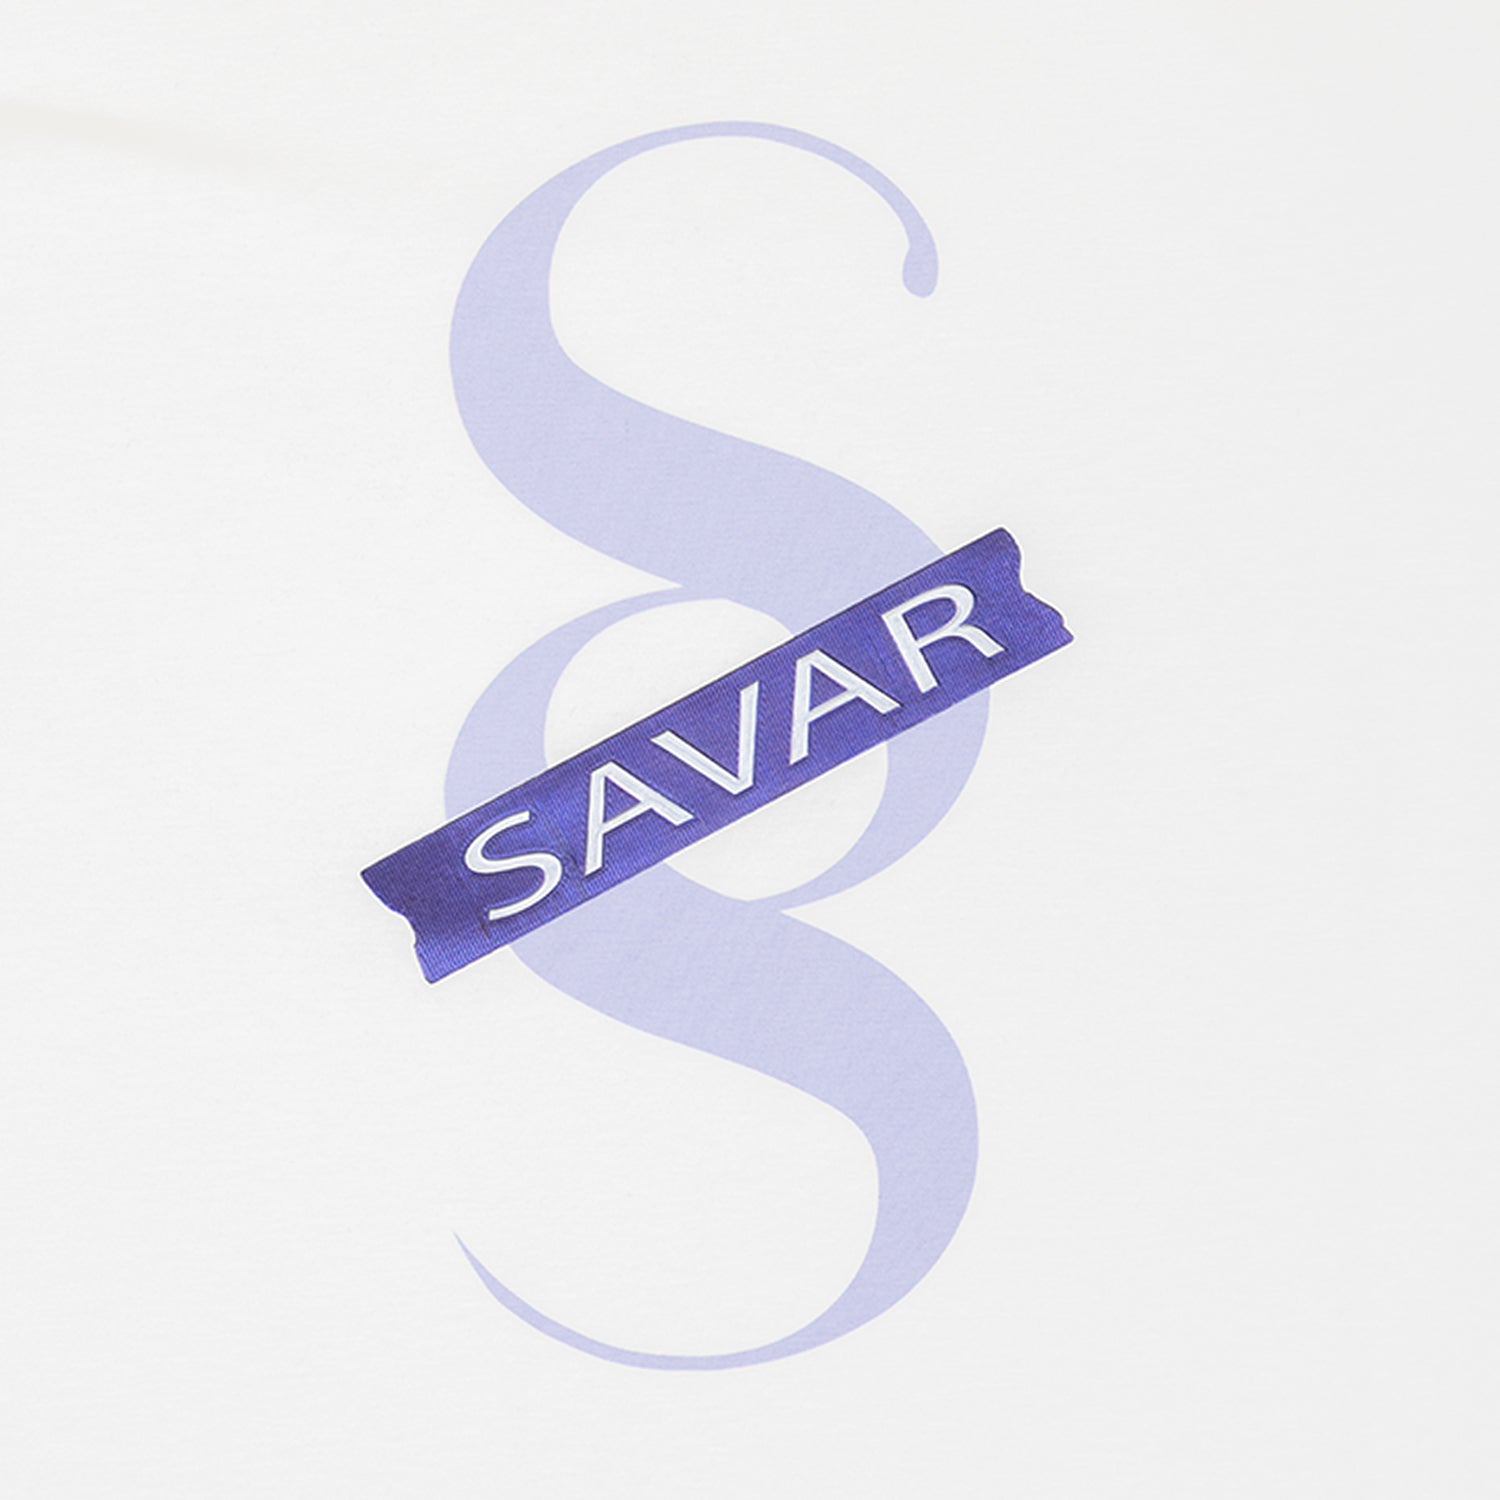 savar-mens-printed-double-short-sleeve-t-shirt-st3016-100